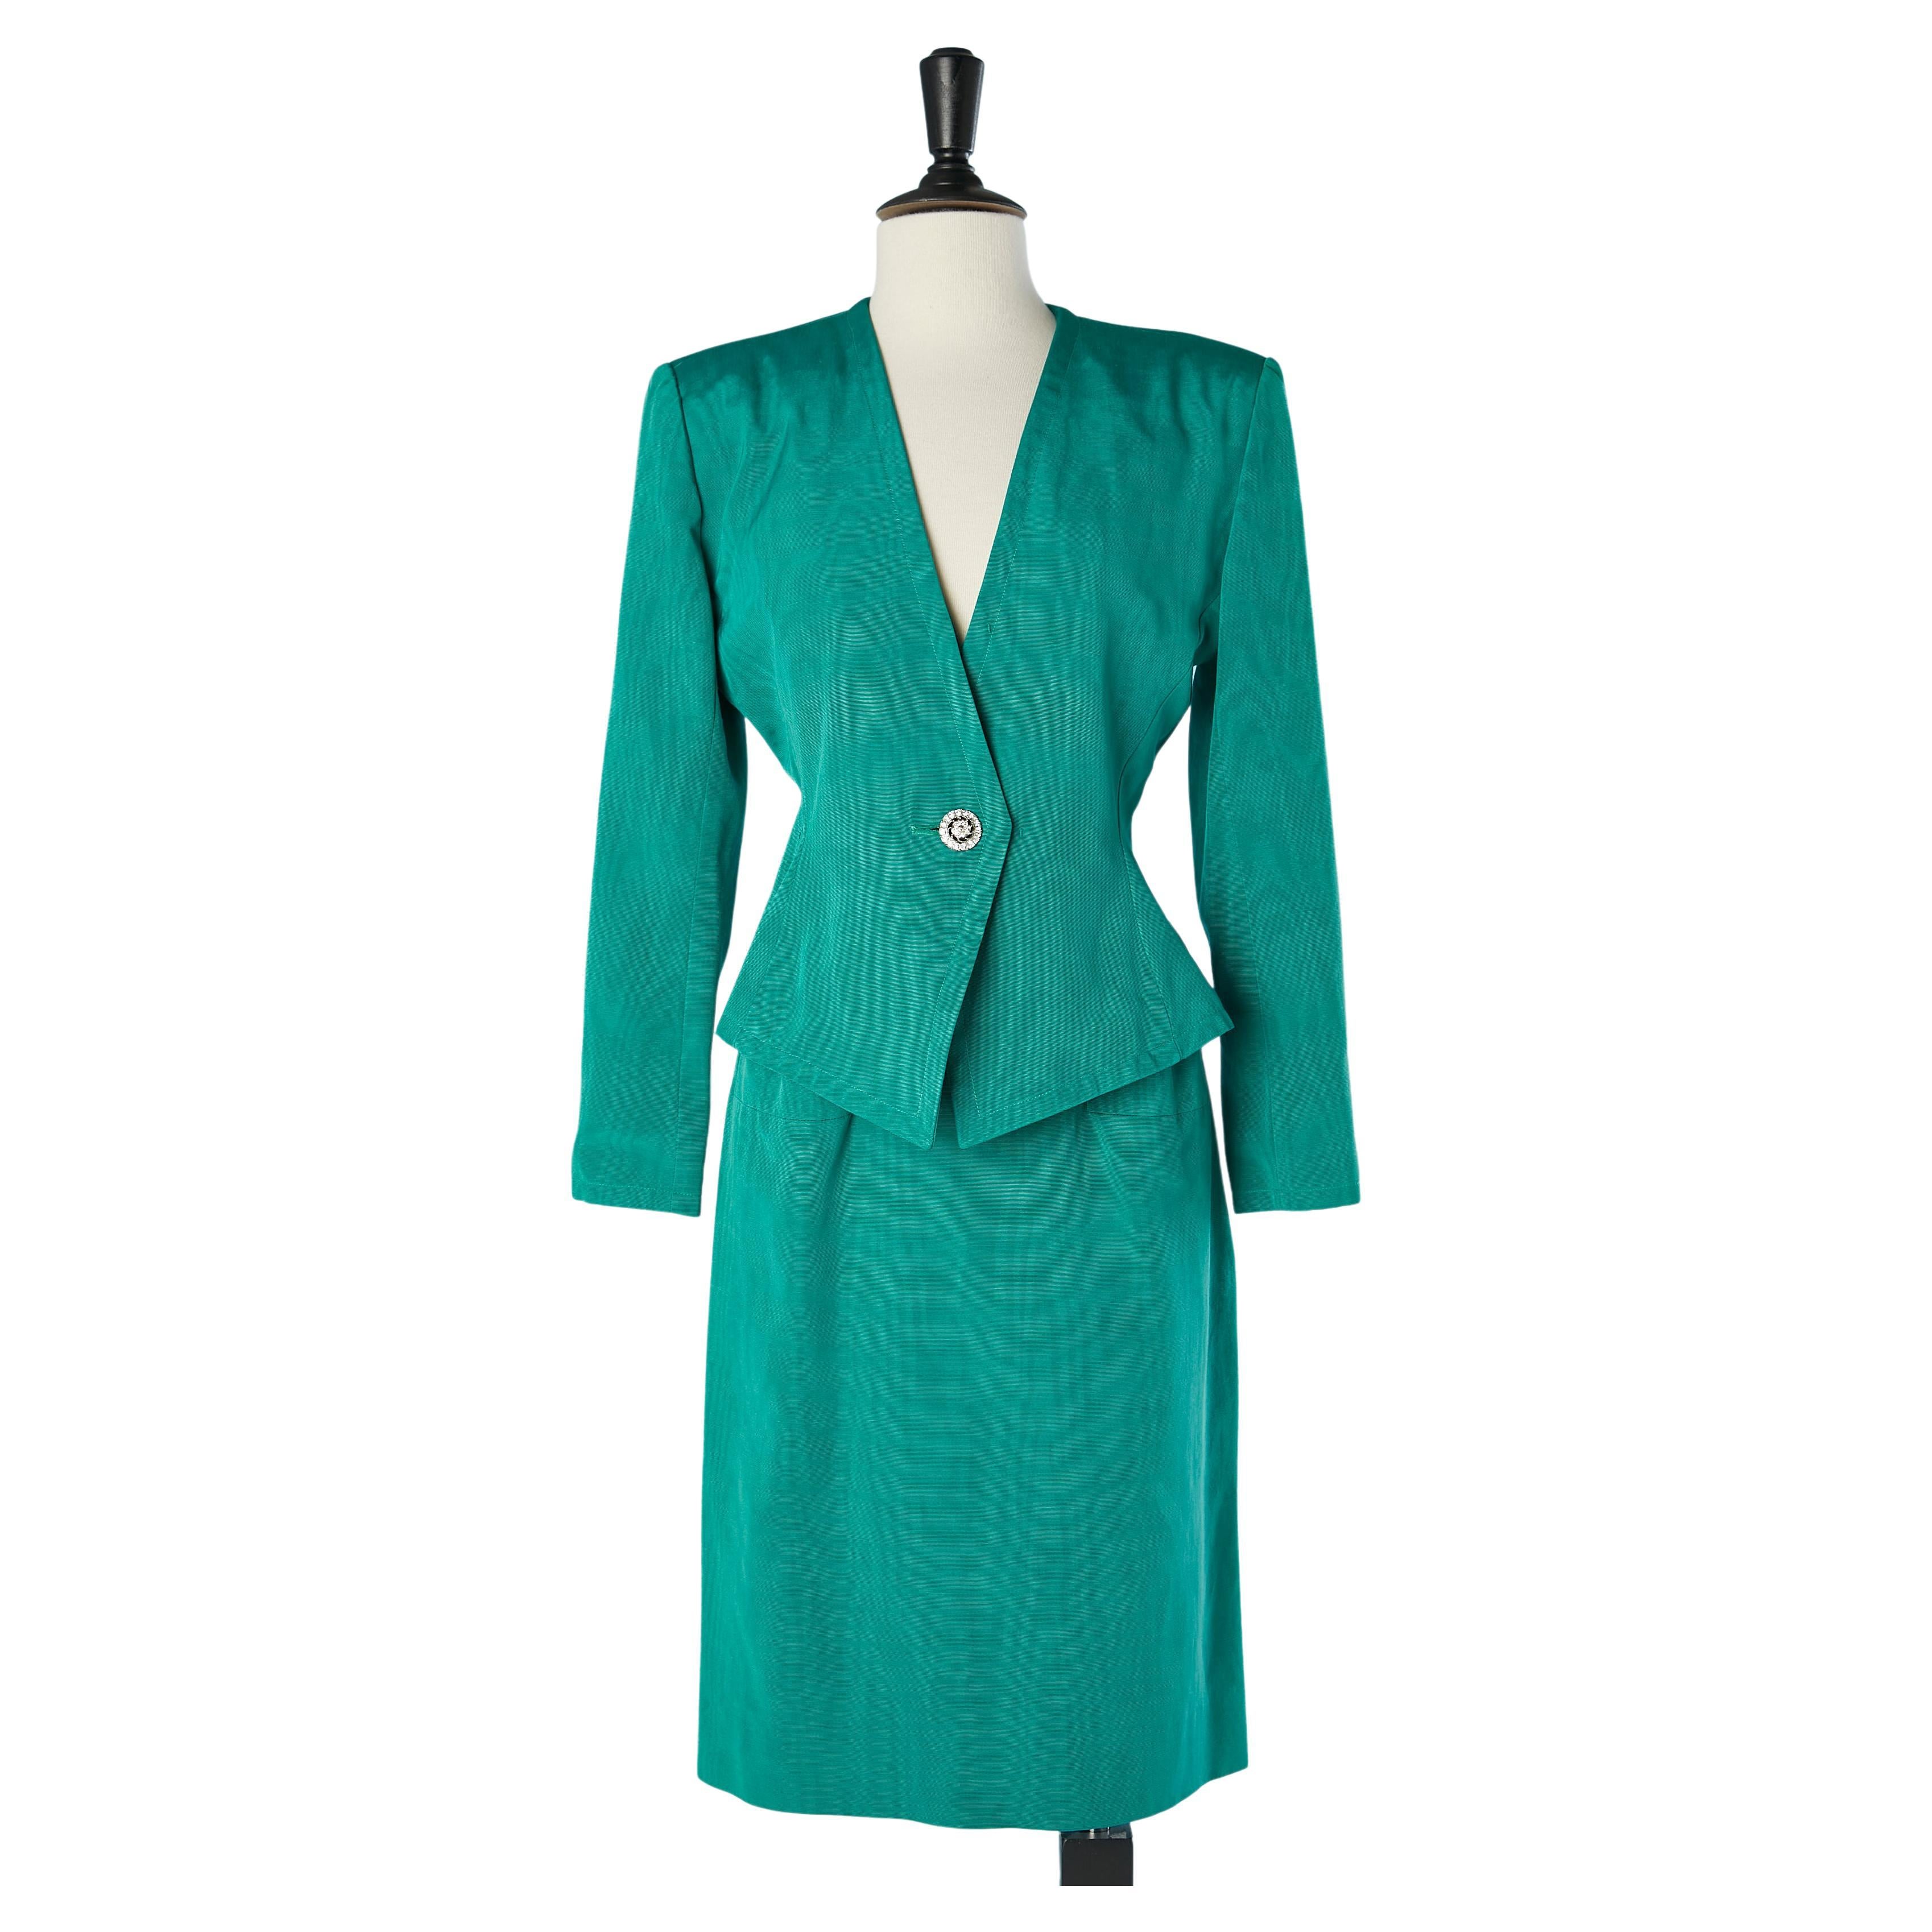 Green Ottoman evening skirt-suit  Saint Laurent Rive Gauche  For Sale